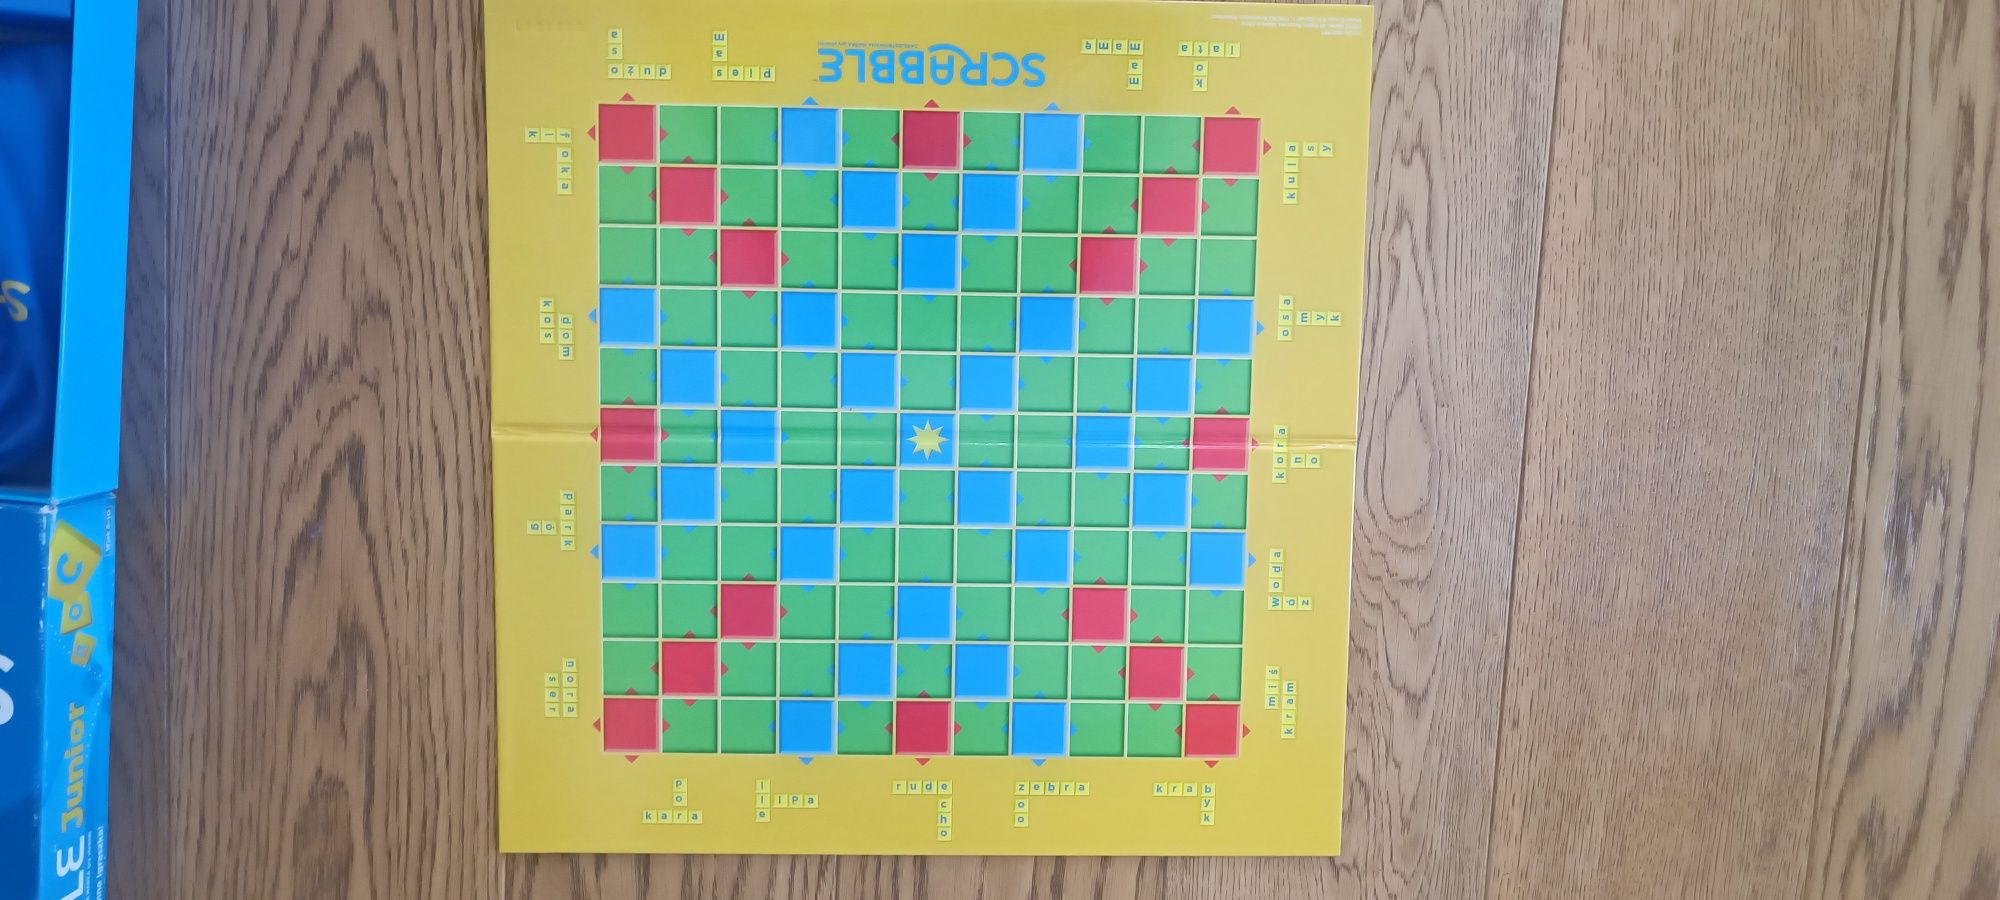 Scrabble junior - gra słowna dla dzieci (2 plansze)